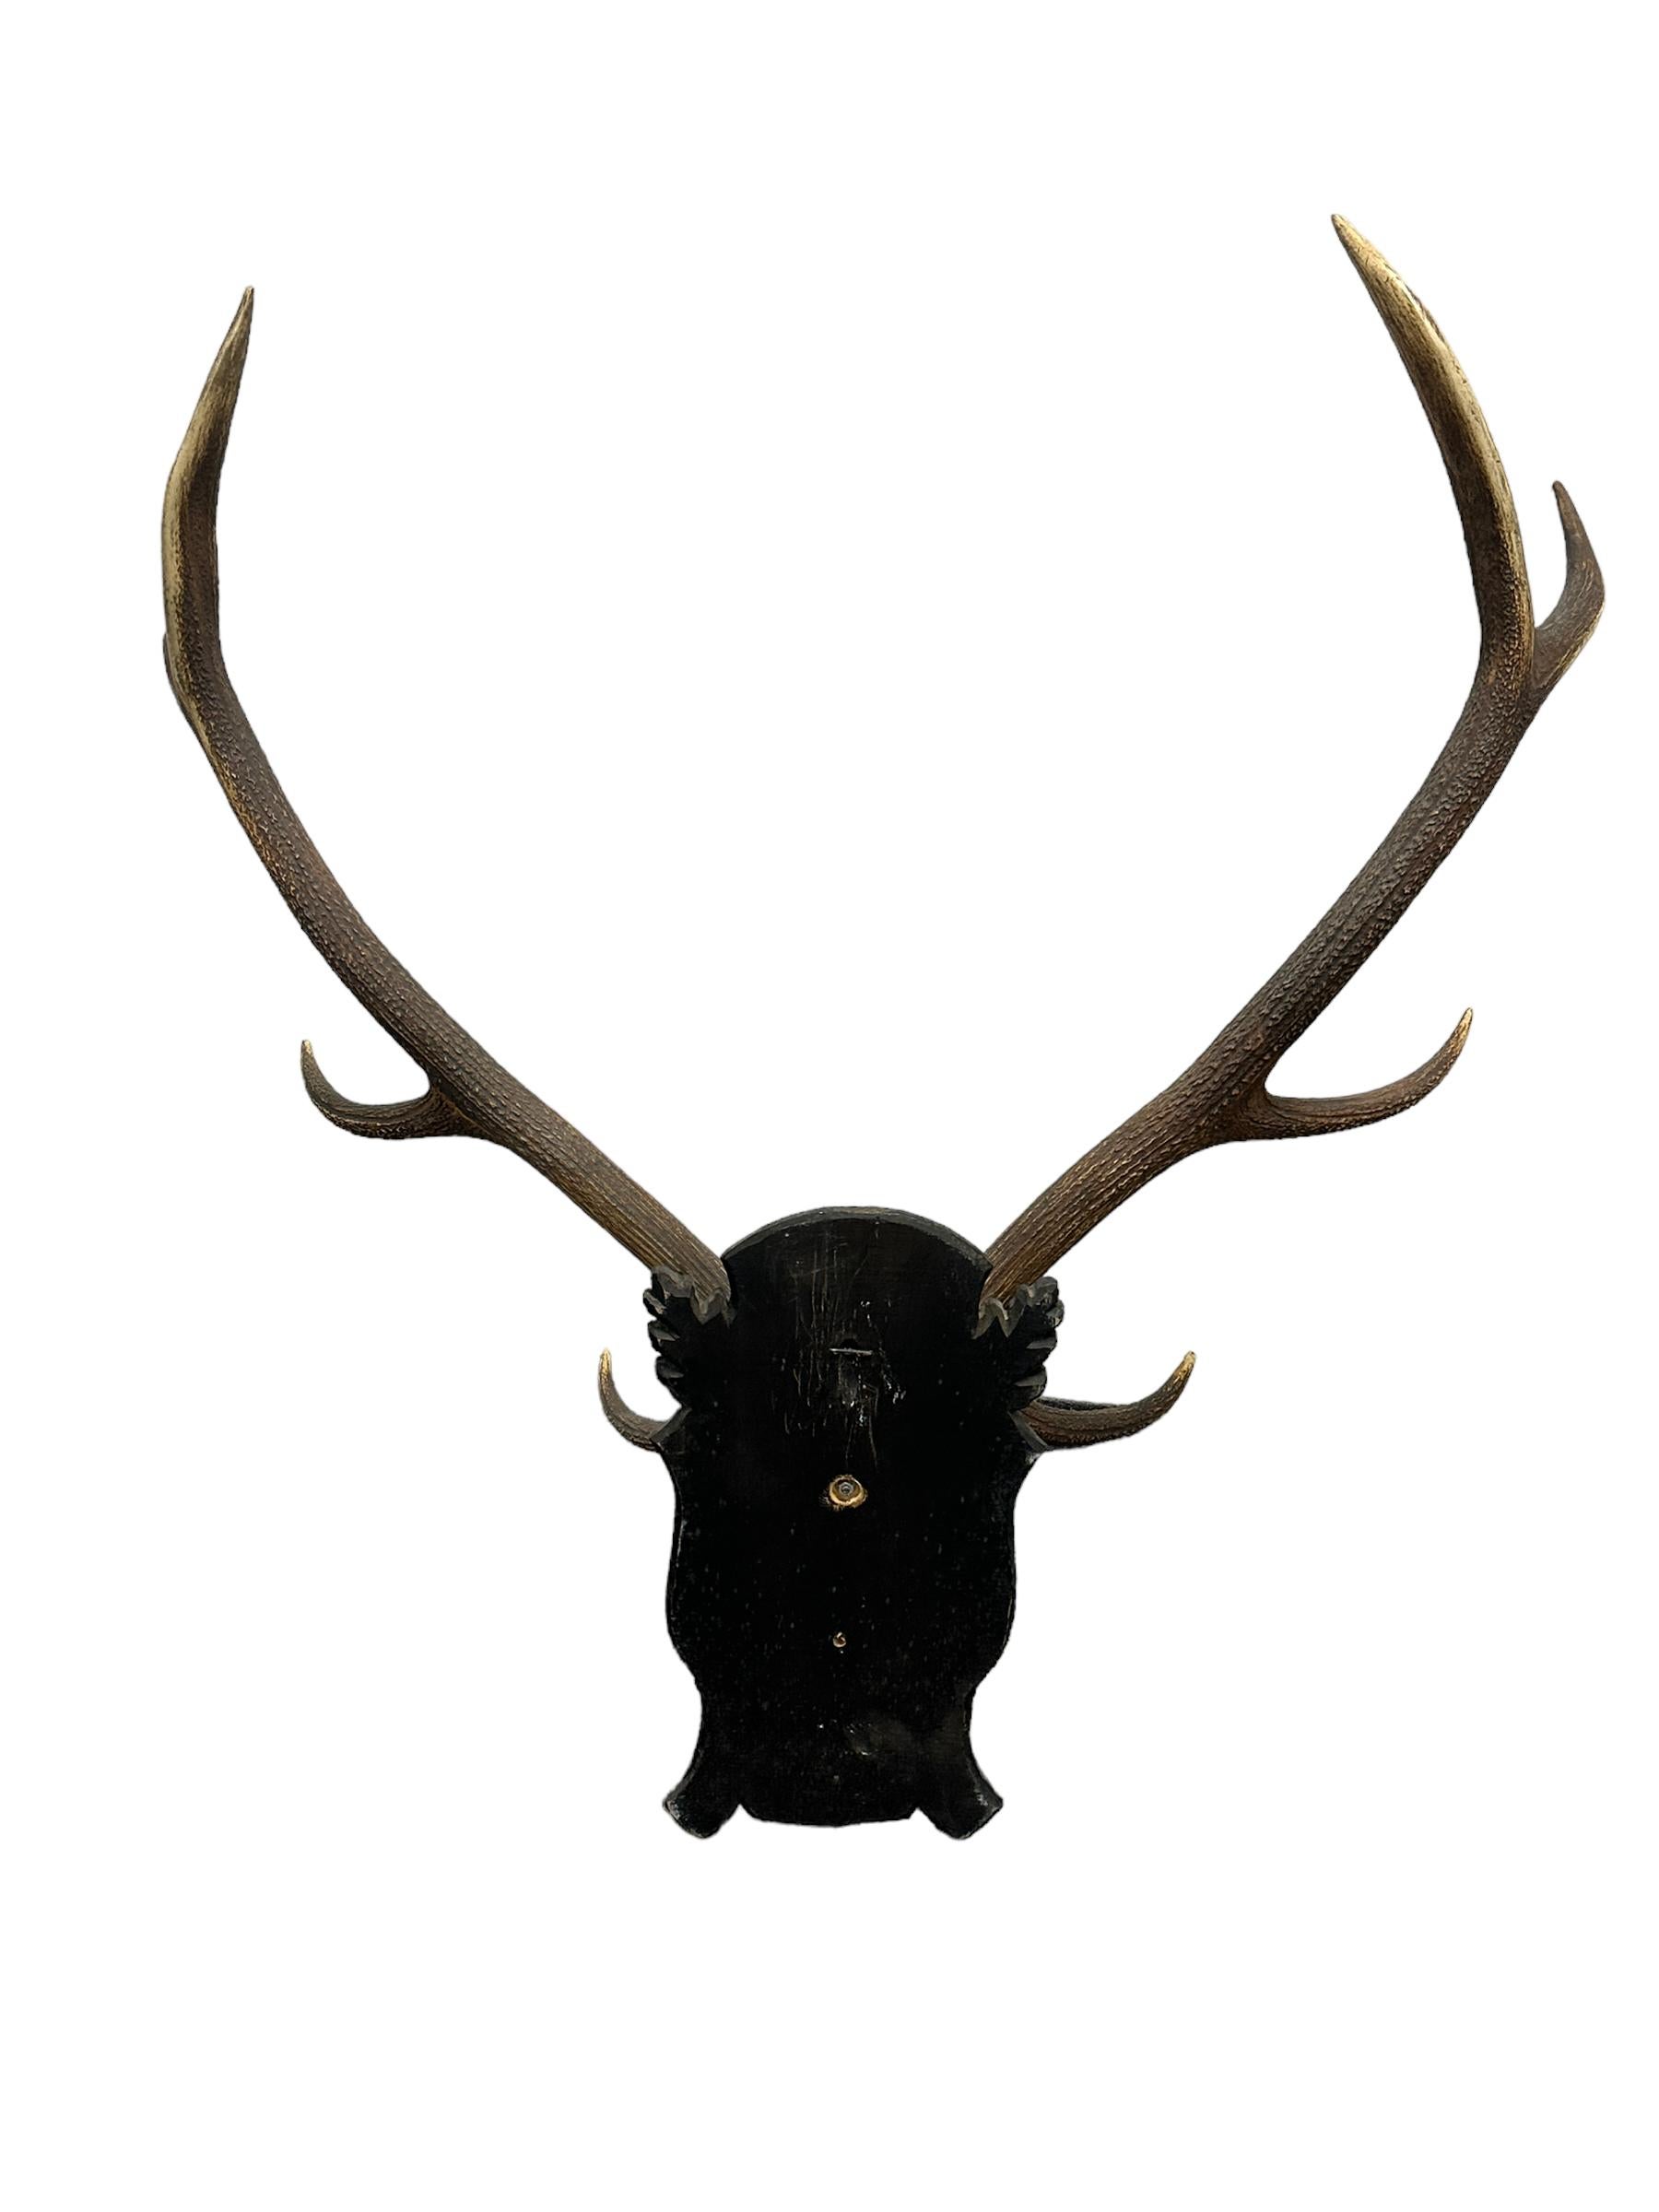 Hand-Carved Large Deer Antler Trophy Vintage Black Forest Wood Carved Plaque, Austria, 1930s For Sale